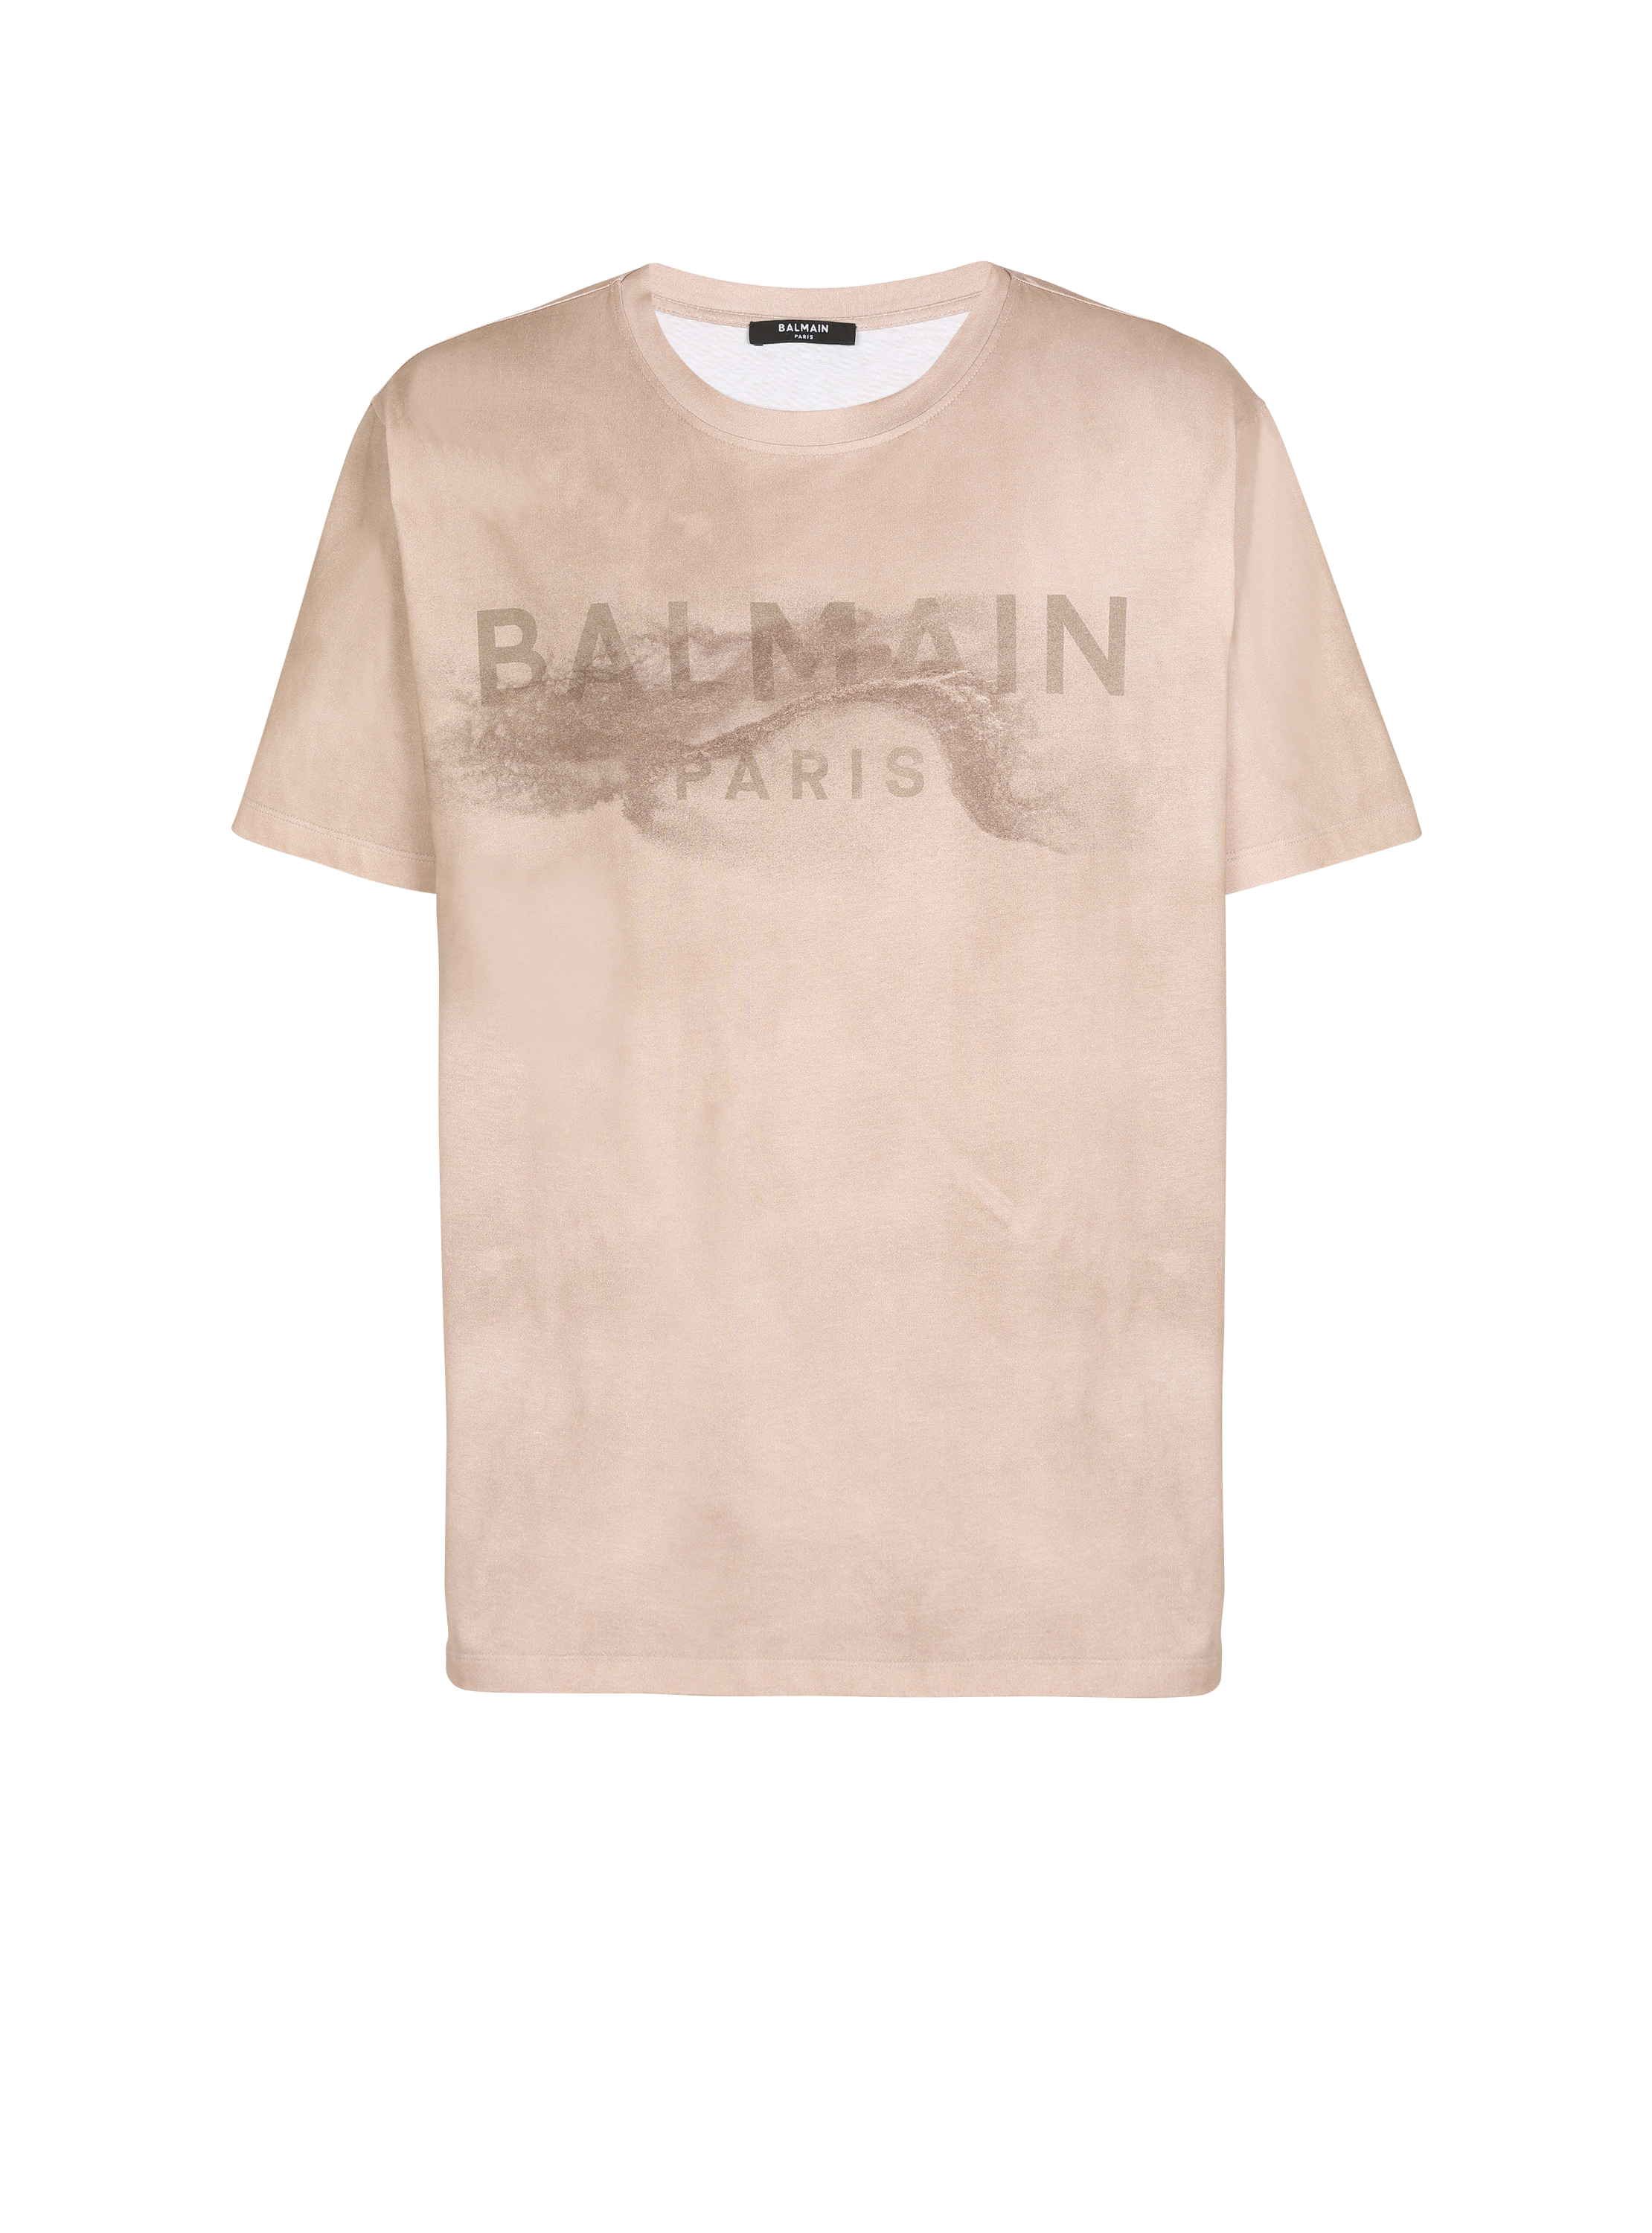 T-shirt en coton éco-responsable imprimé logo Balmain Paris désert